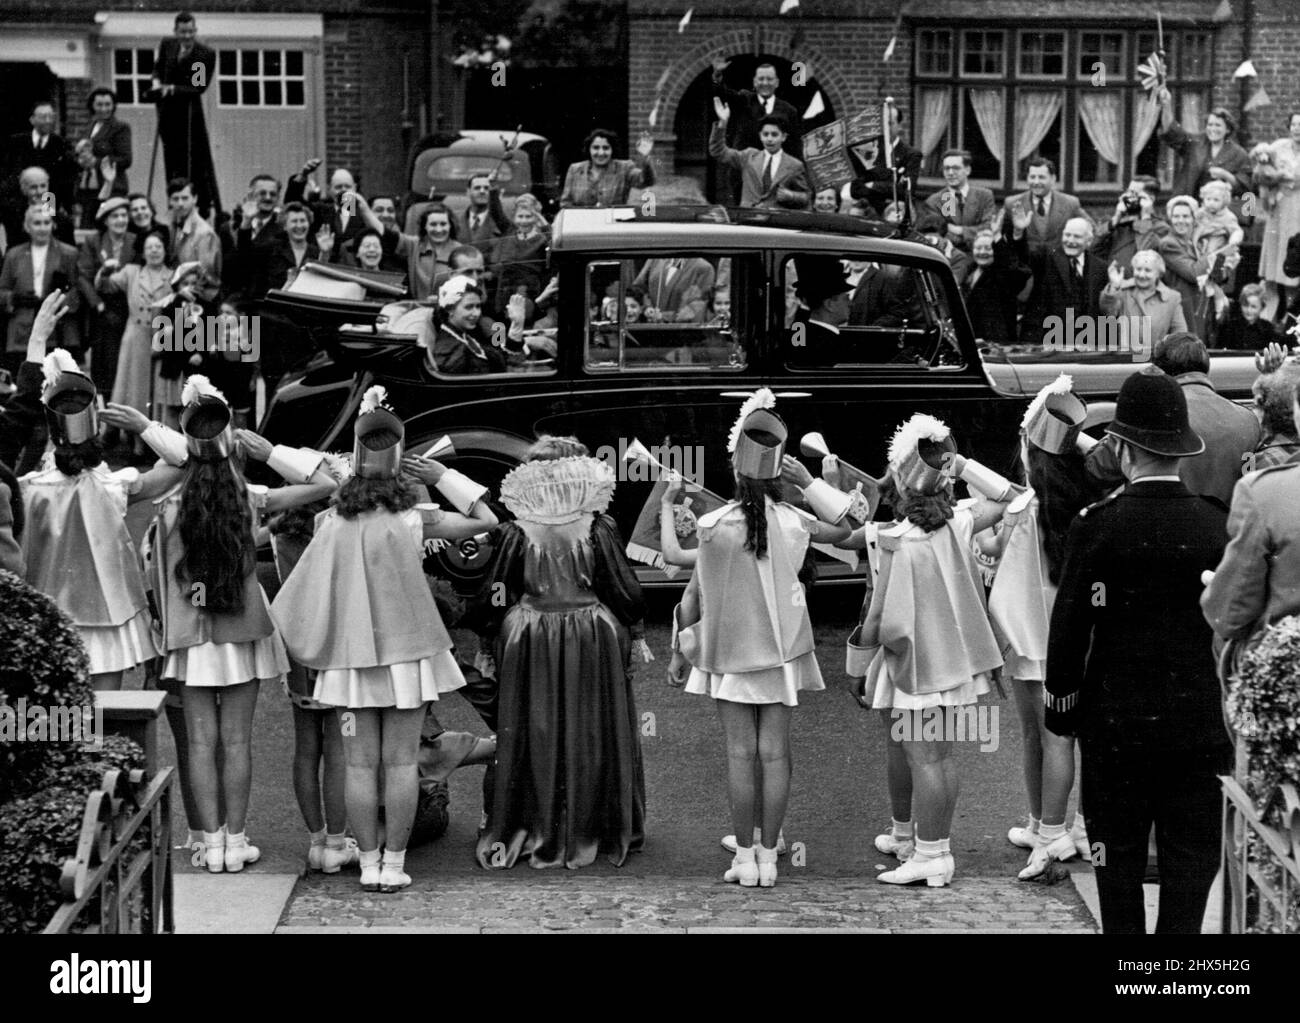 Grüßen und eine Fanfare von Trompeten... Dies war die Szene, als 'Queen Bess' und ihr 'Court' - Children of Acton - die Königin und den Herzog von Edinburgh begrüßten. Die Queen und der Duke winken mit Freude zurück, als sie gestern auf ihrer Krönungsreise durch den Nordwesten Londons langsam an einem offenen Auto vorbei fahren. Den ganzen Tag lang „die Leute“. 05. Juni 1953. (Foto von Daily Mirror). Stockfoto